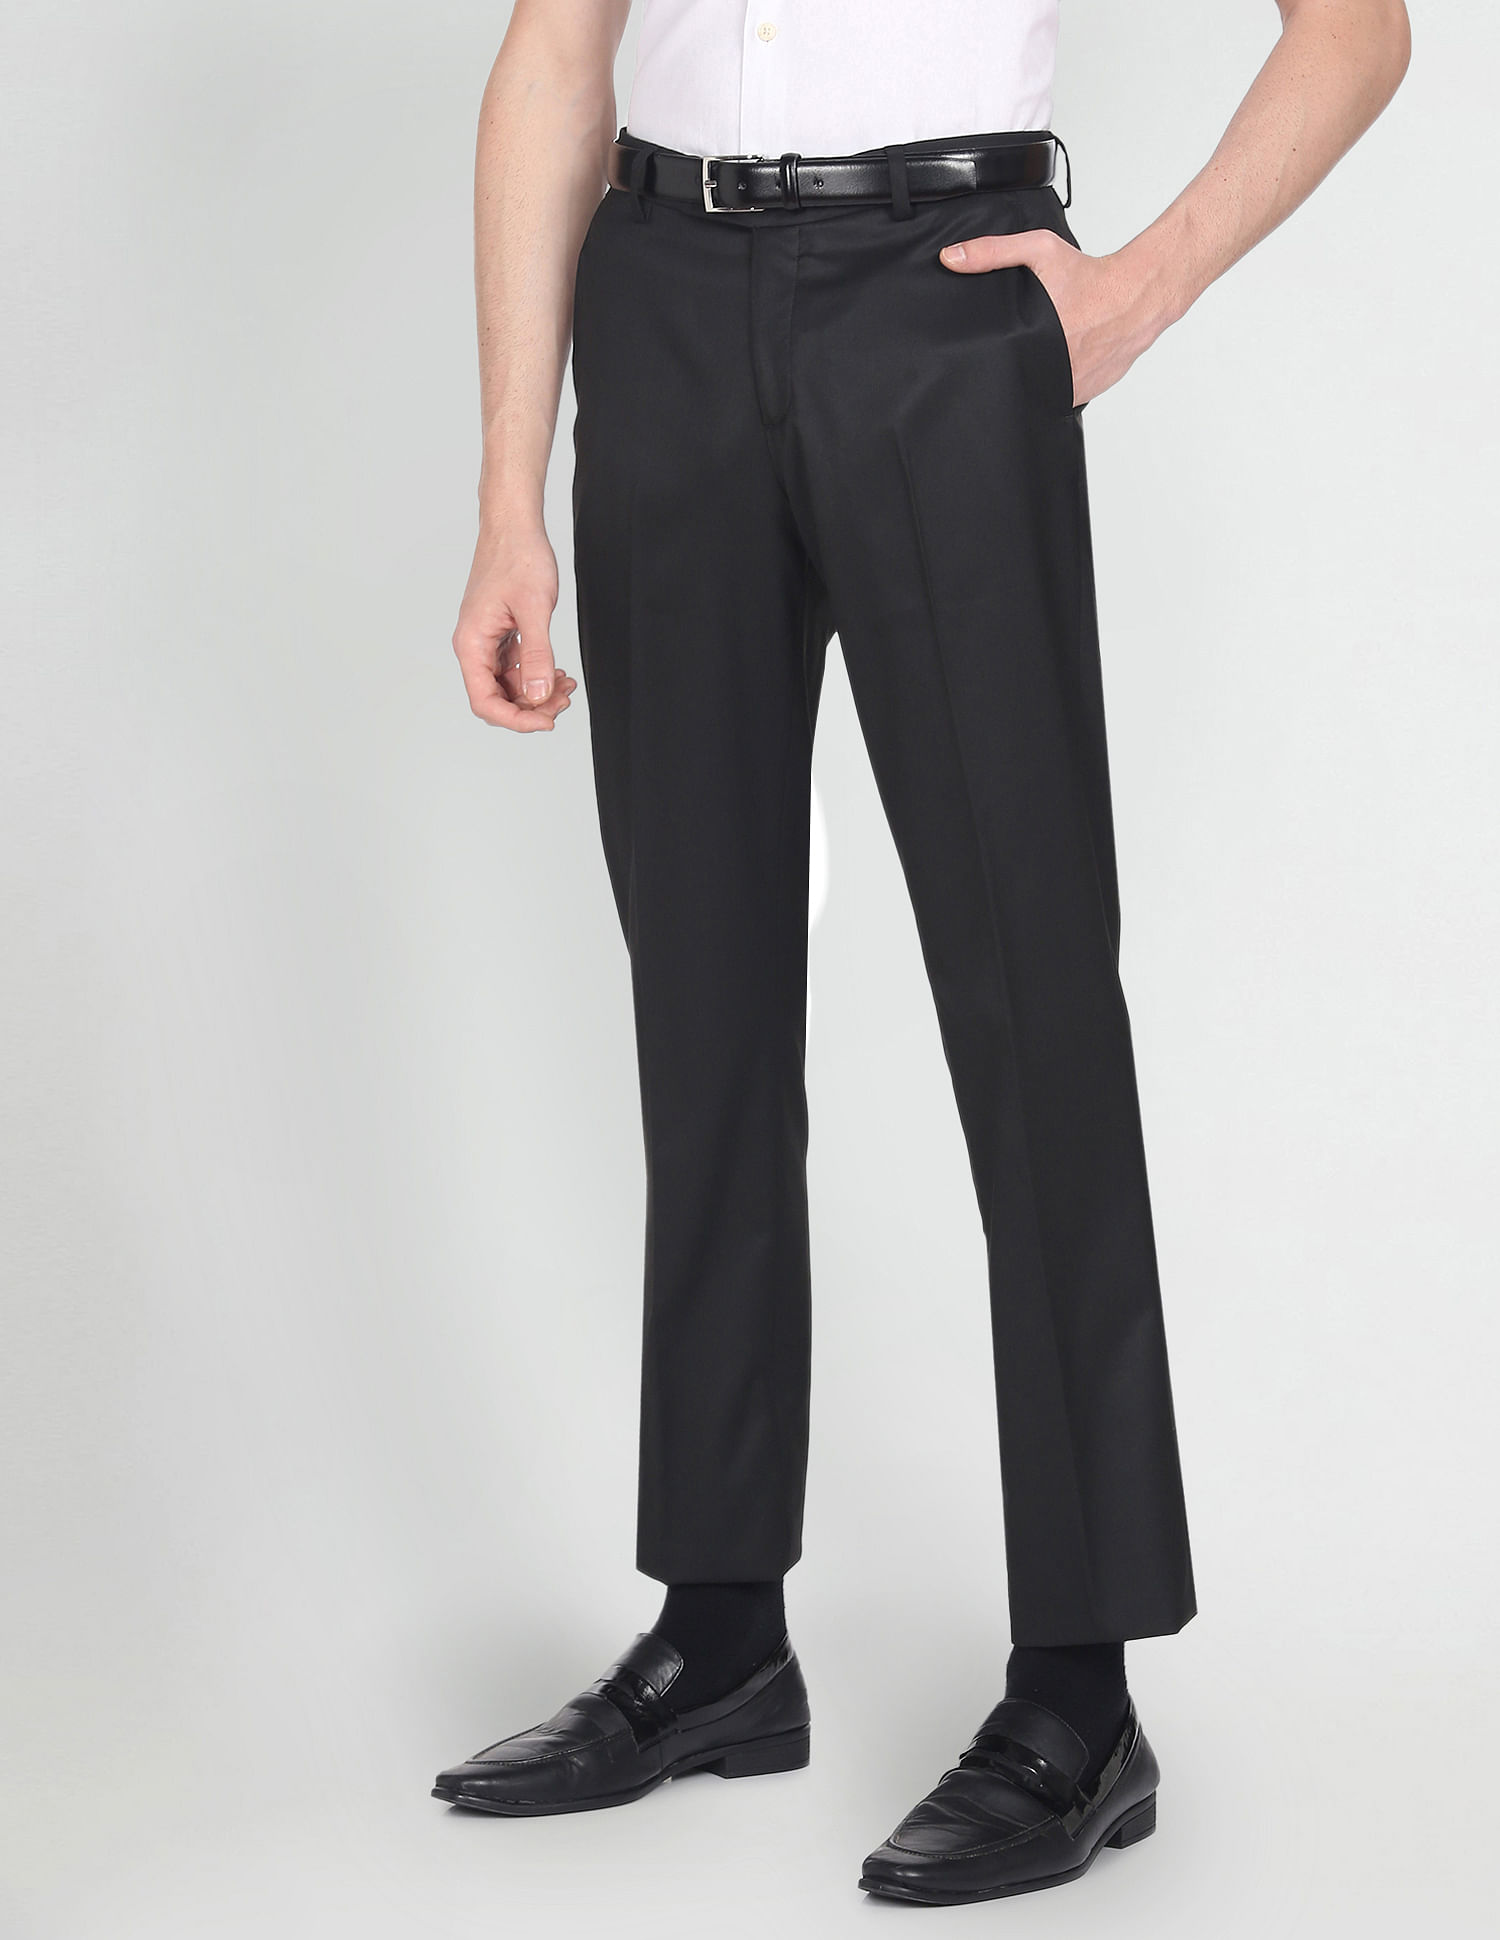 KARL LAGERFELD PARIS Tailored Trousers | Bloomingdale's